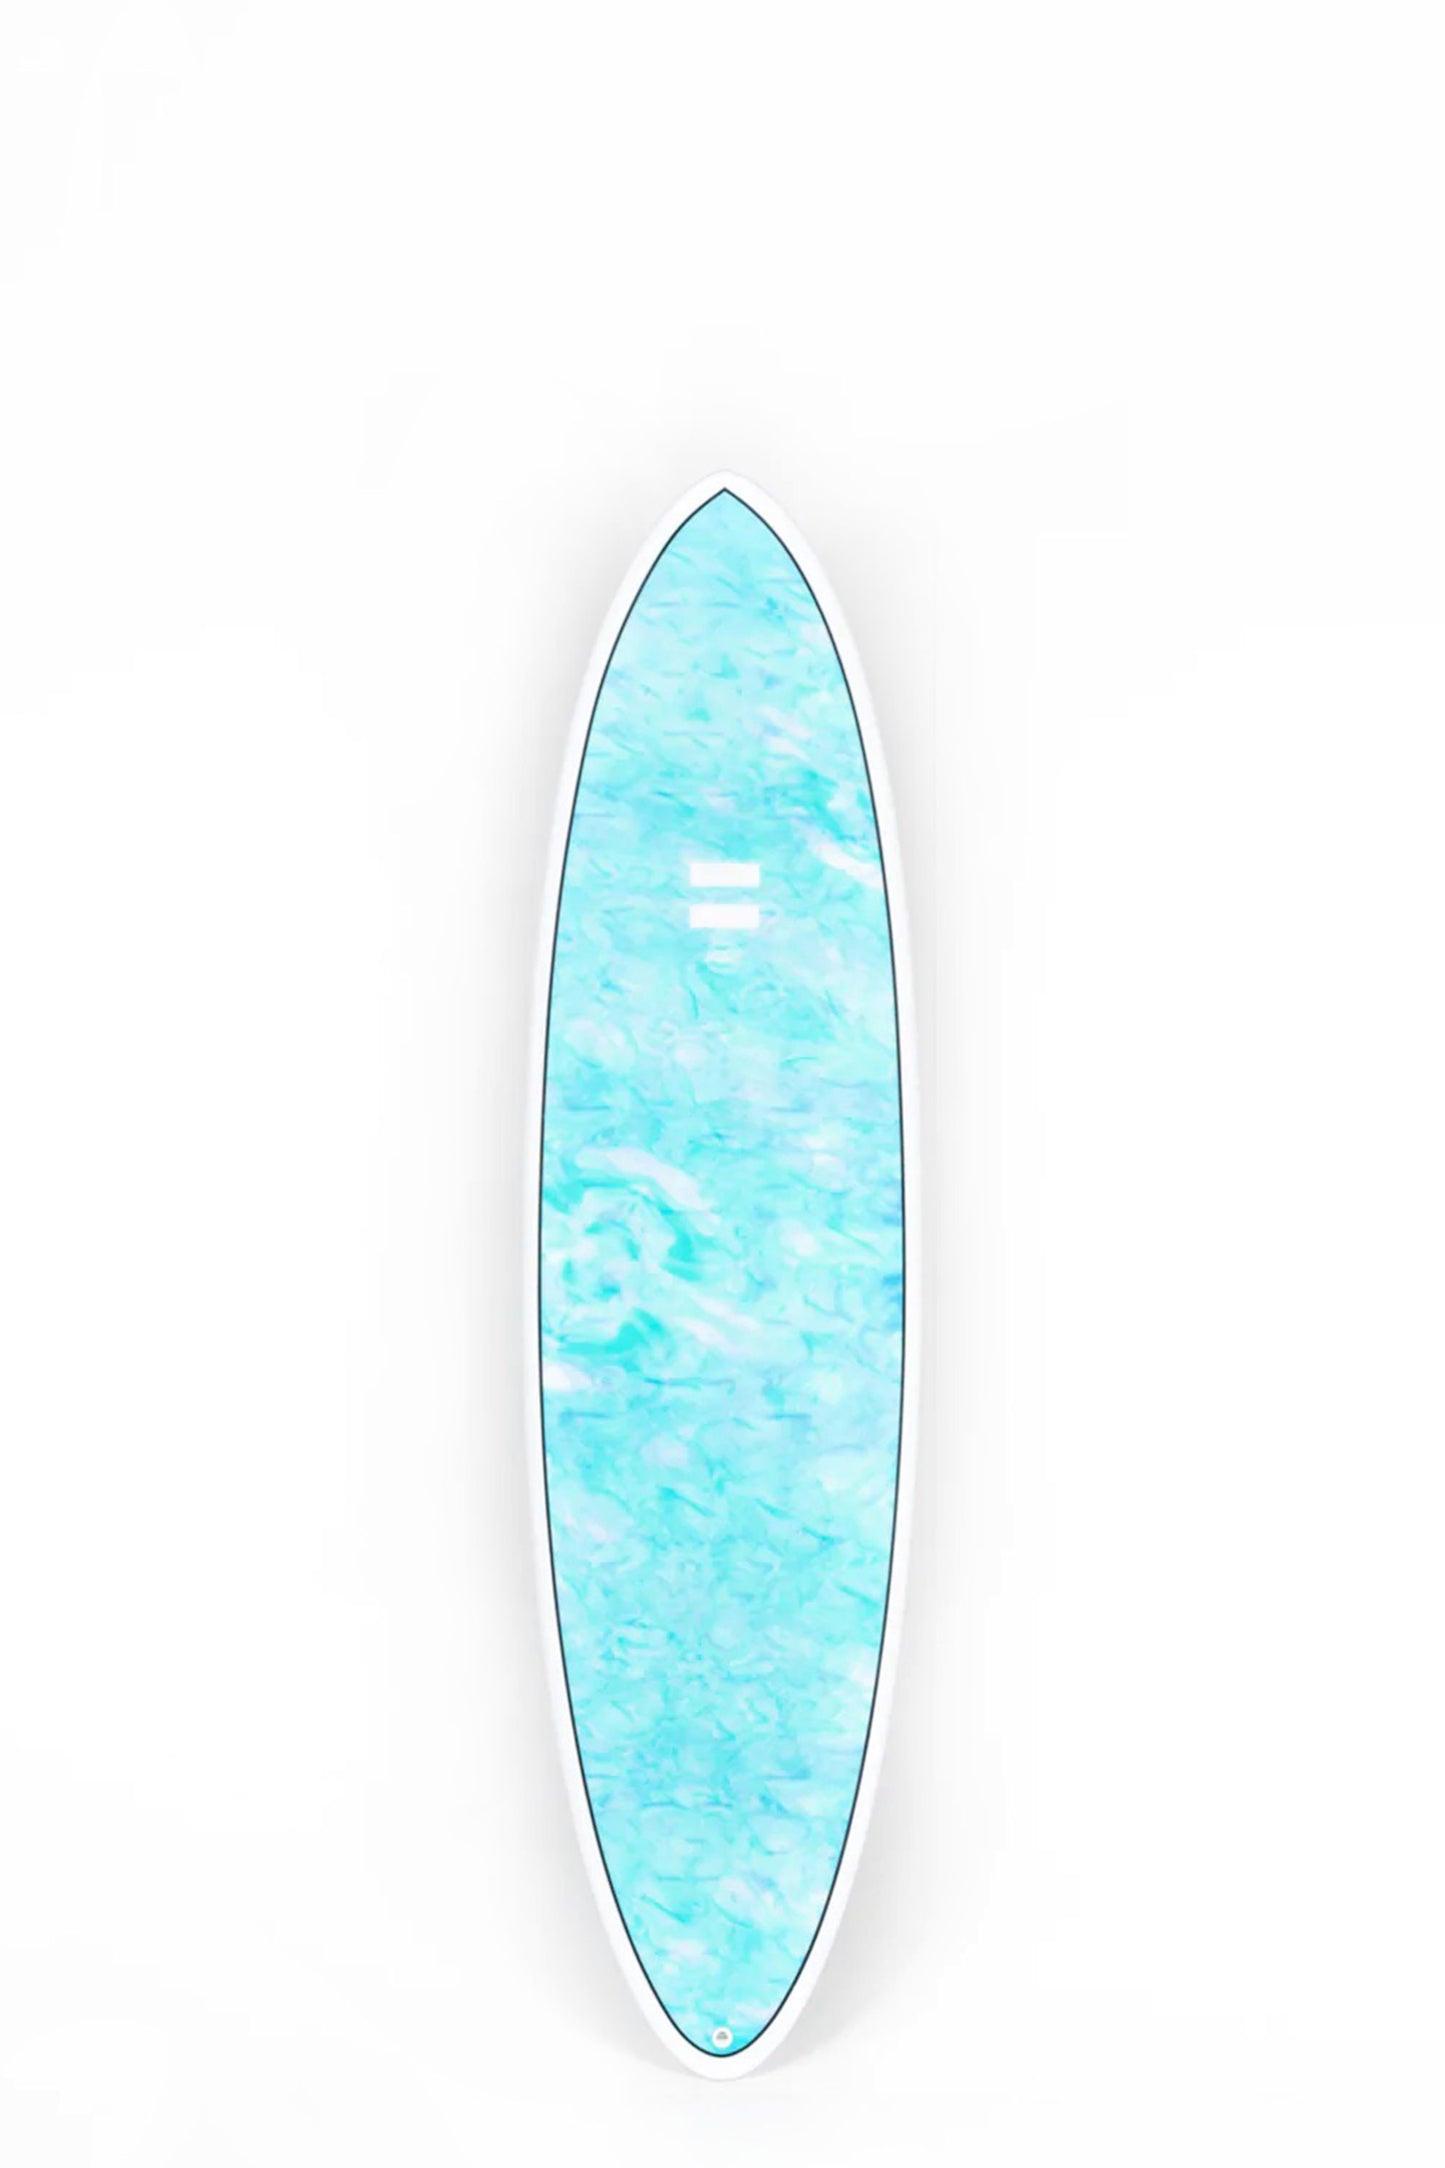 Pukas Surf Shop - Indio Endurance - THE EGG Swirl Effect Blue Mint - 7´2 x 21 3/4 x 2 3/4 - 50L